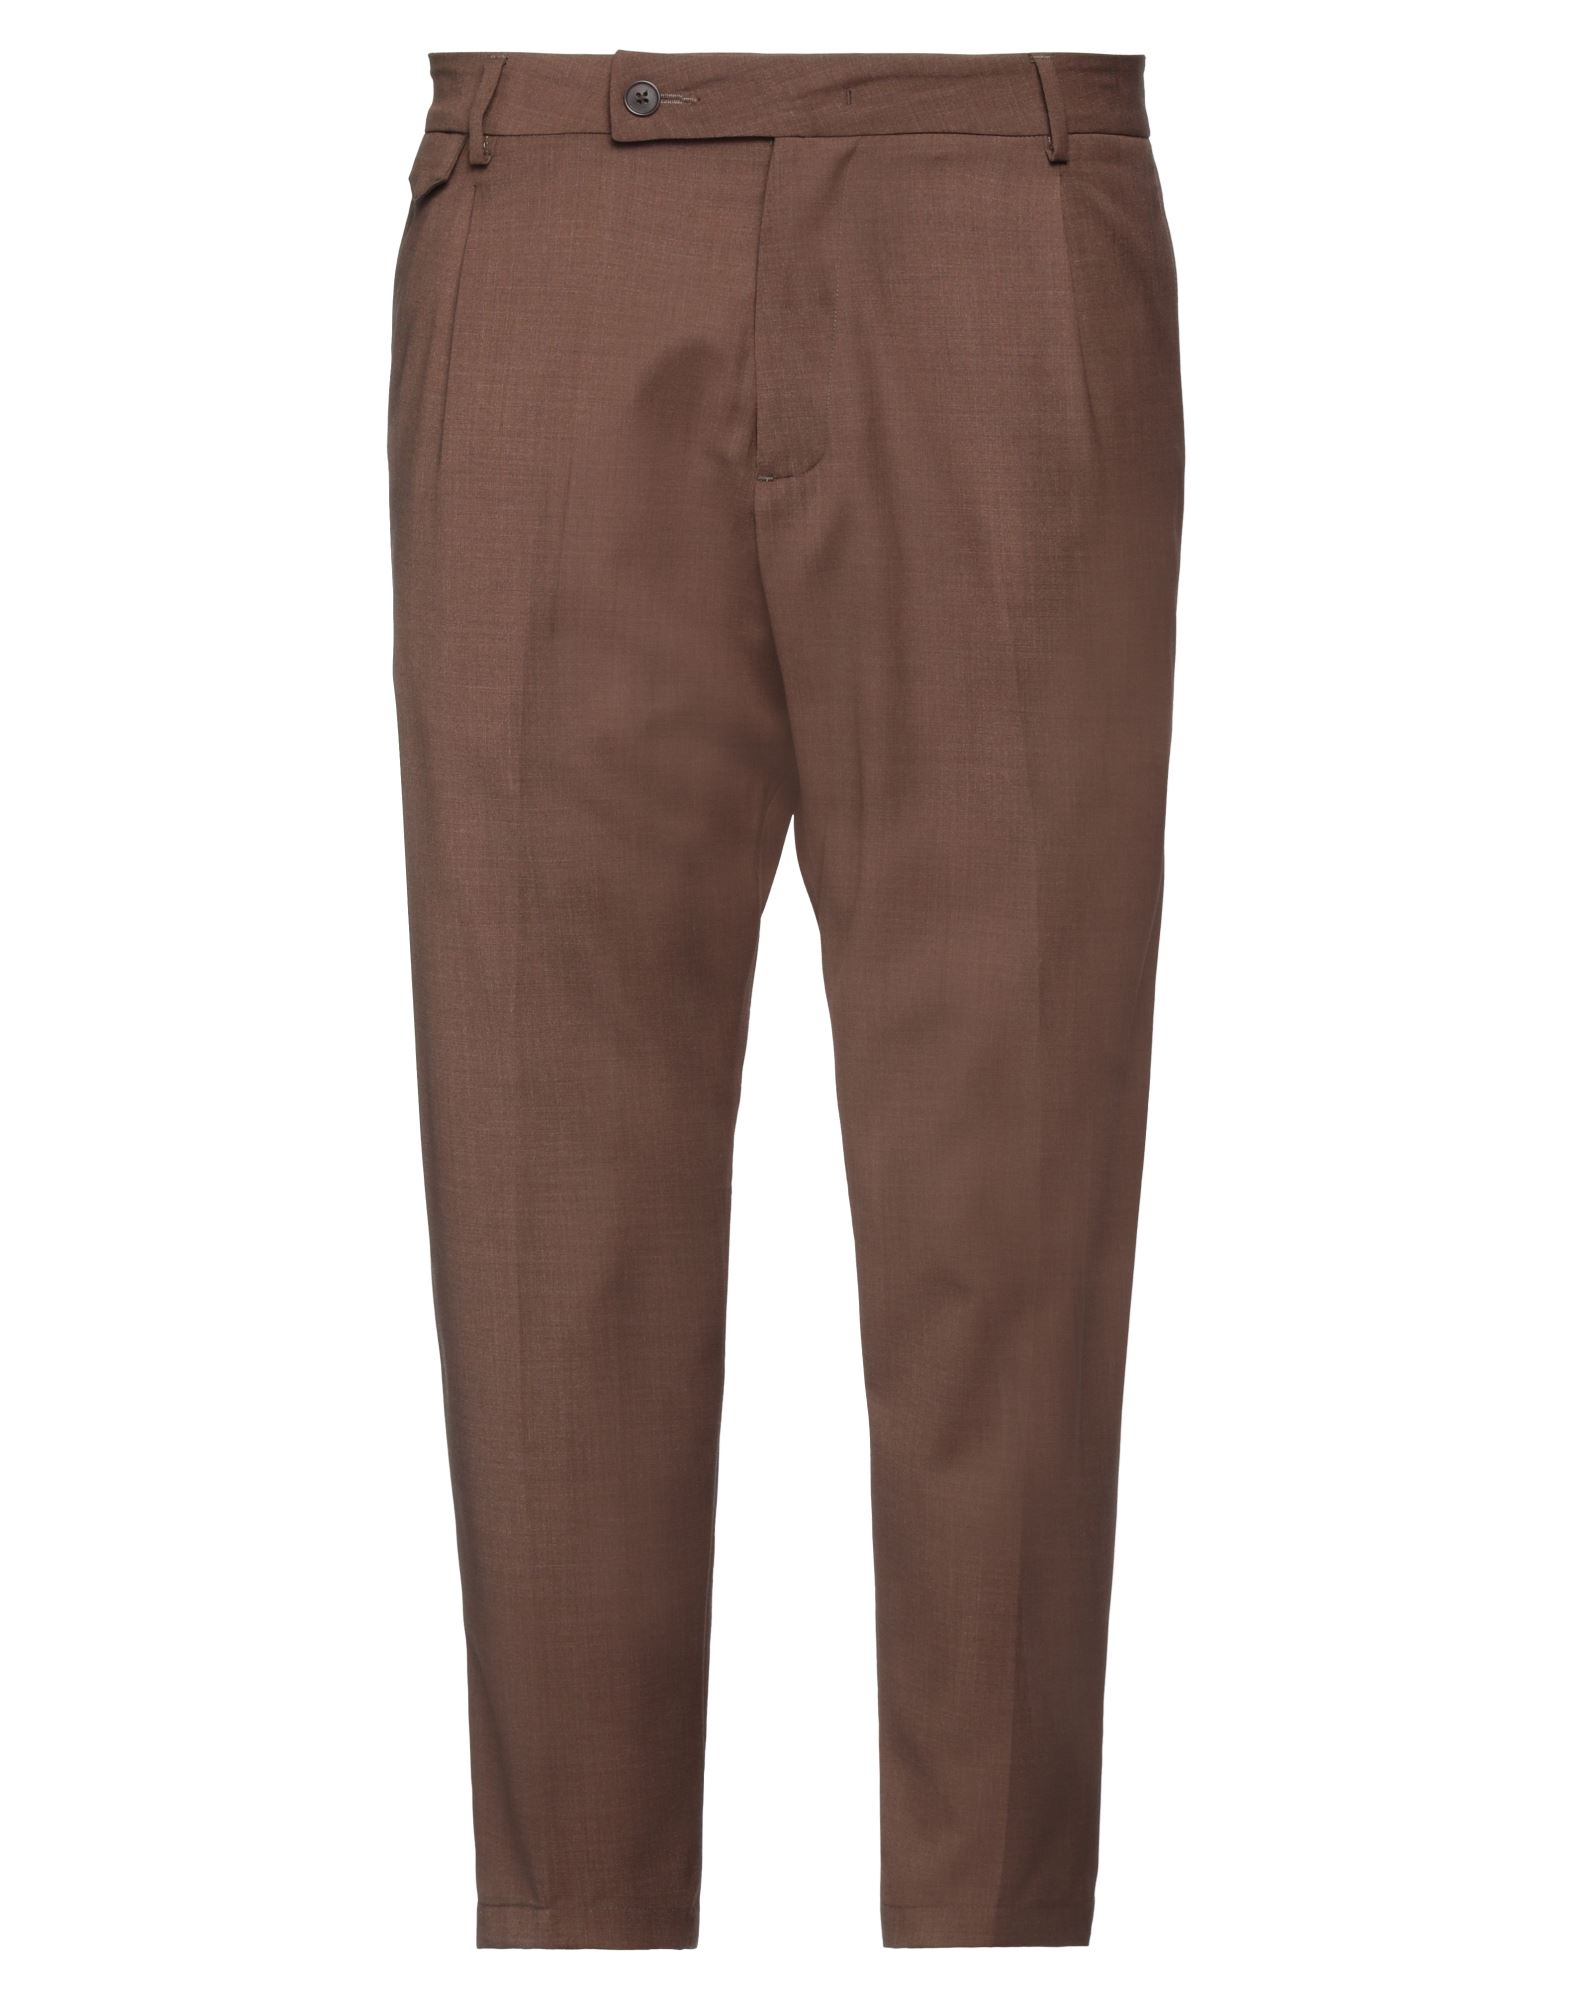 Golden Craft 1957 Pants In Brown